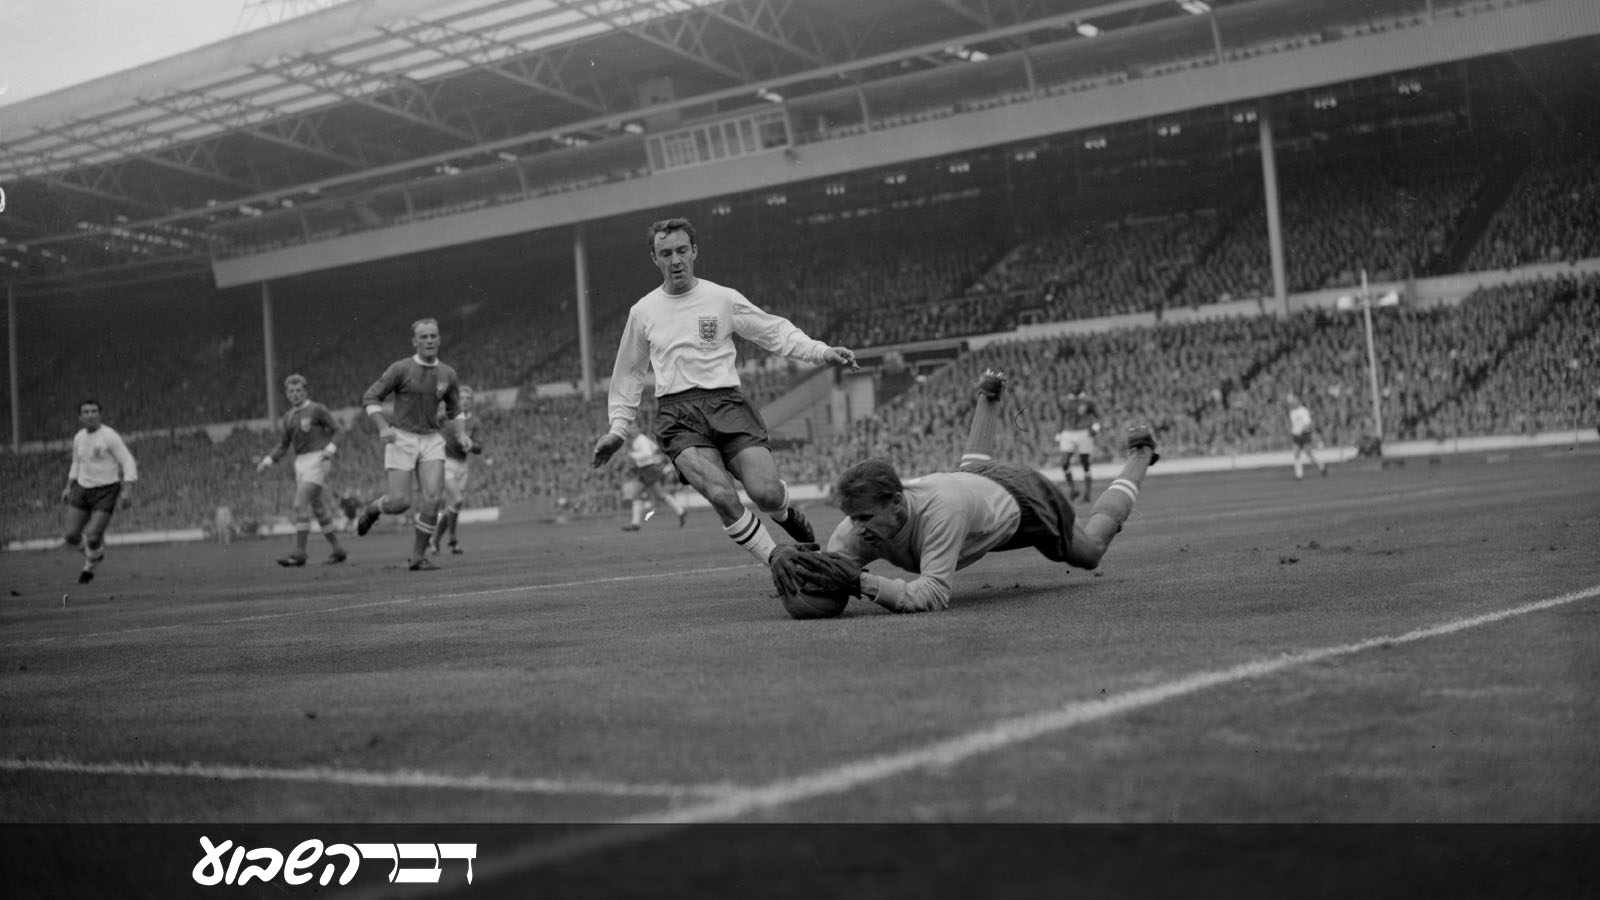 לב יאשין מציל כדור במשחק נבחרת "שאר העולם" מול נבחרת אנגליה ב-23 באוקטובר 1963. (Photo by Dennis Oulds/Central Press/Getty Images IL)